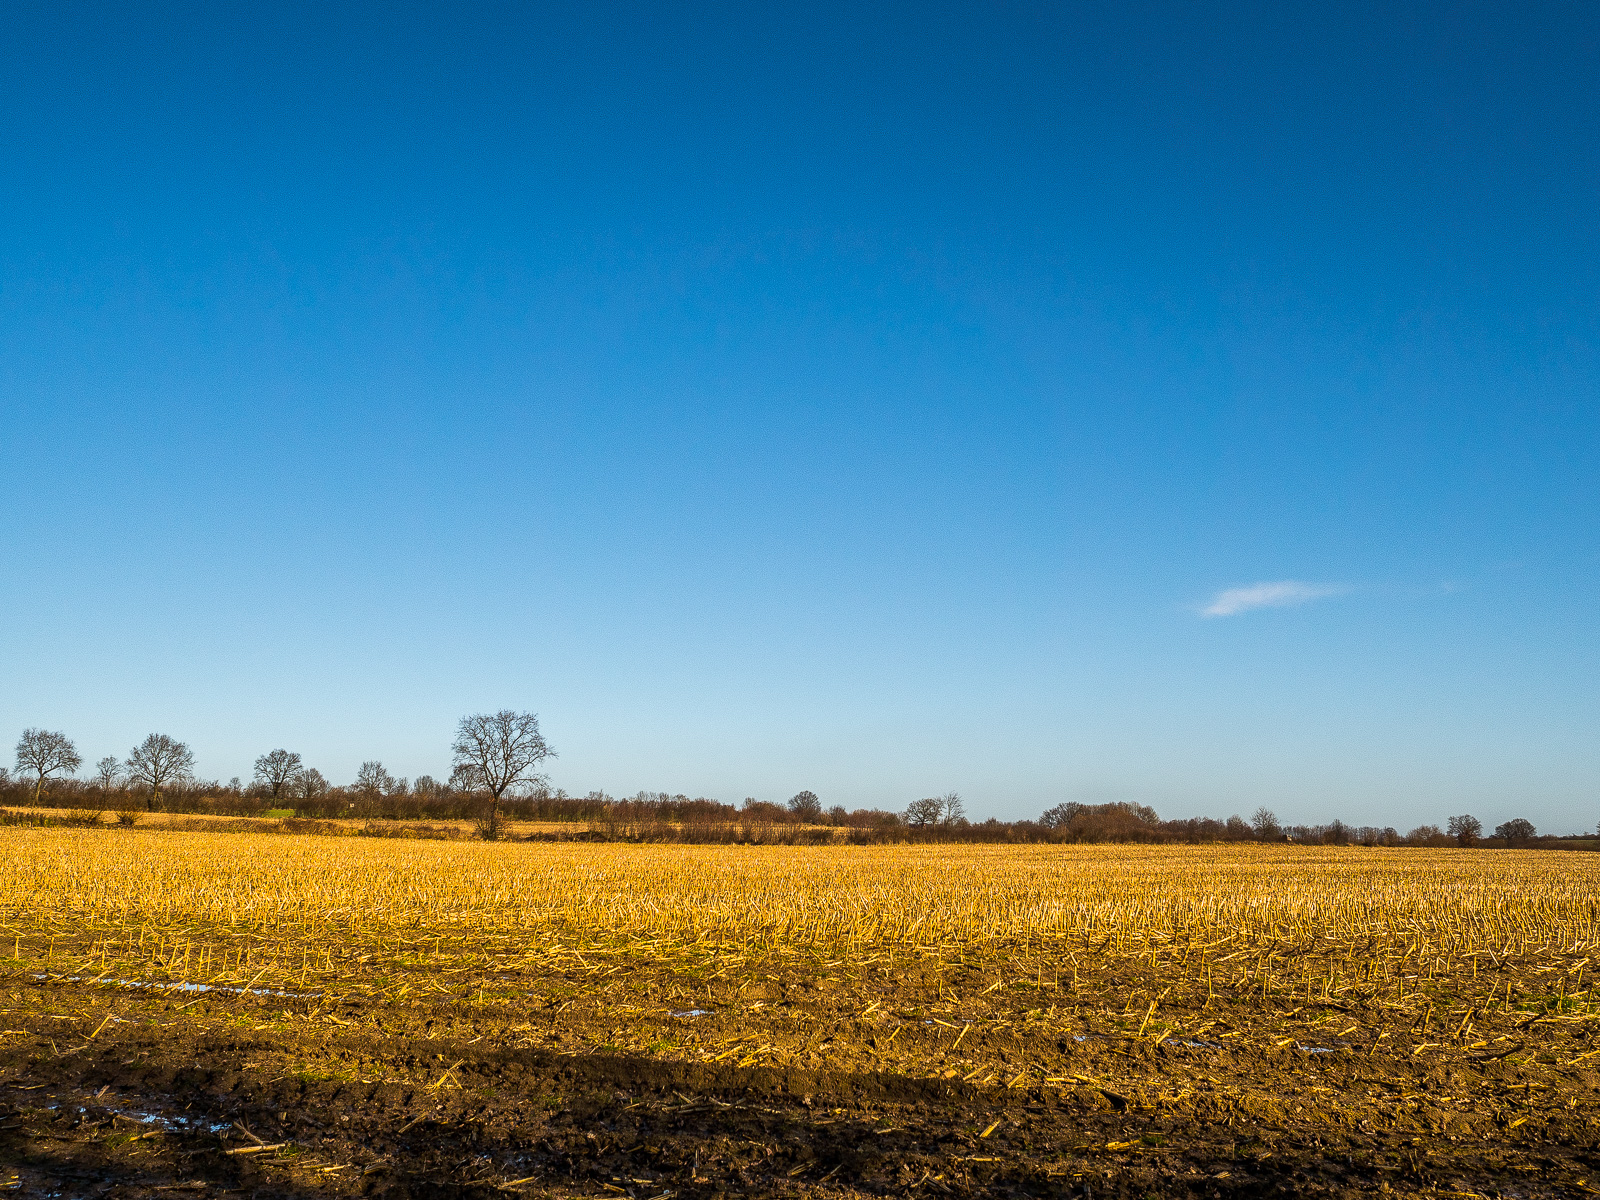 Ein abgeerntetes Feld, goldgelbe Stoppeln, im unteren Drittel des Bildes, darüber ein fast makellos blauer Himmel mit einer einzigen kleinen weißen Wolke rechts auf mittlerer Bildhöhe